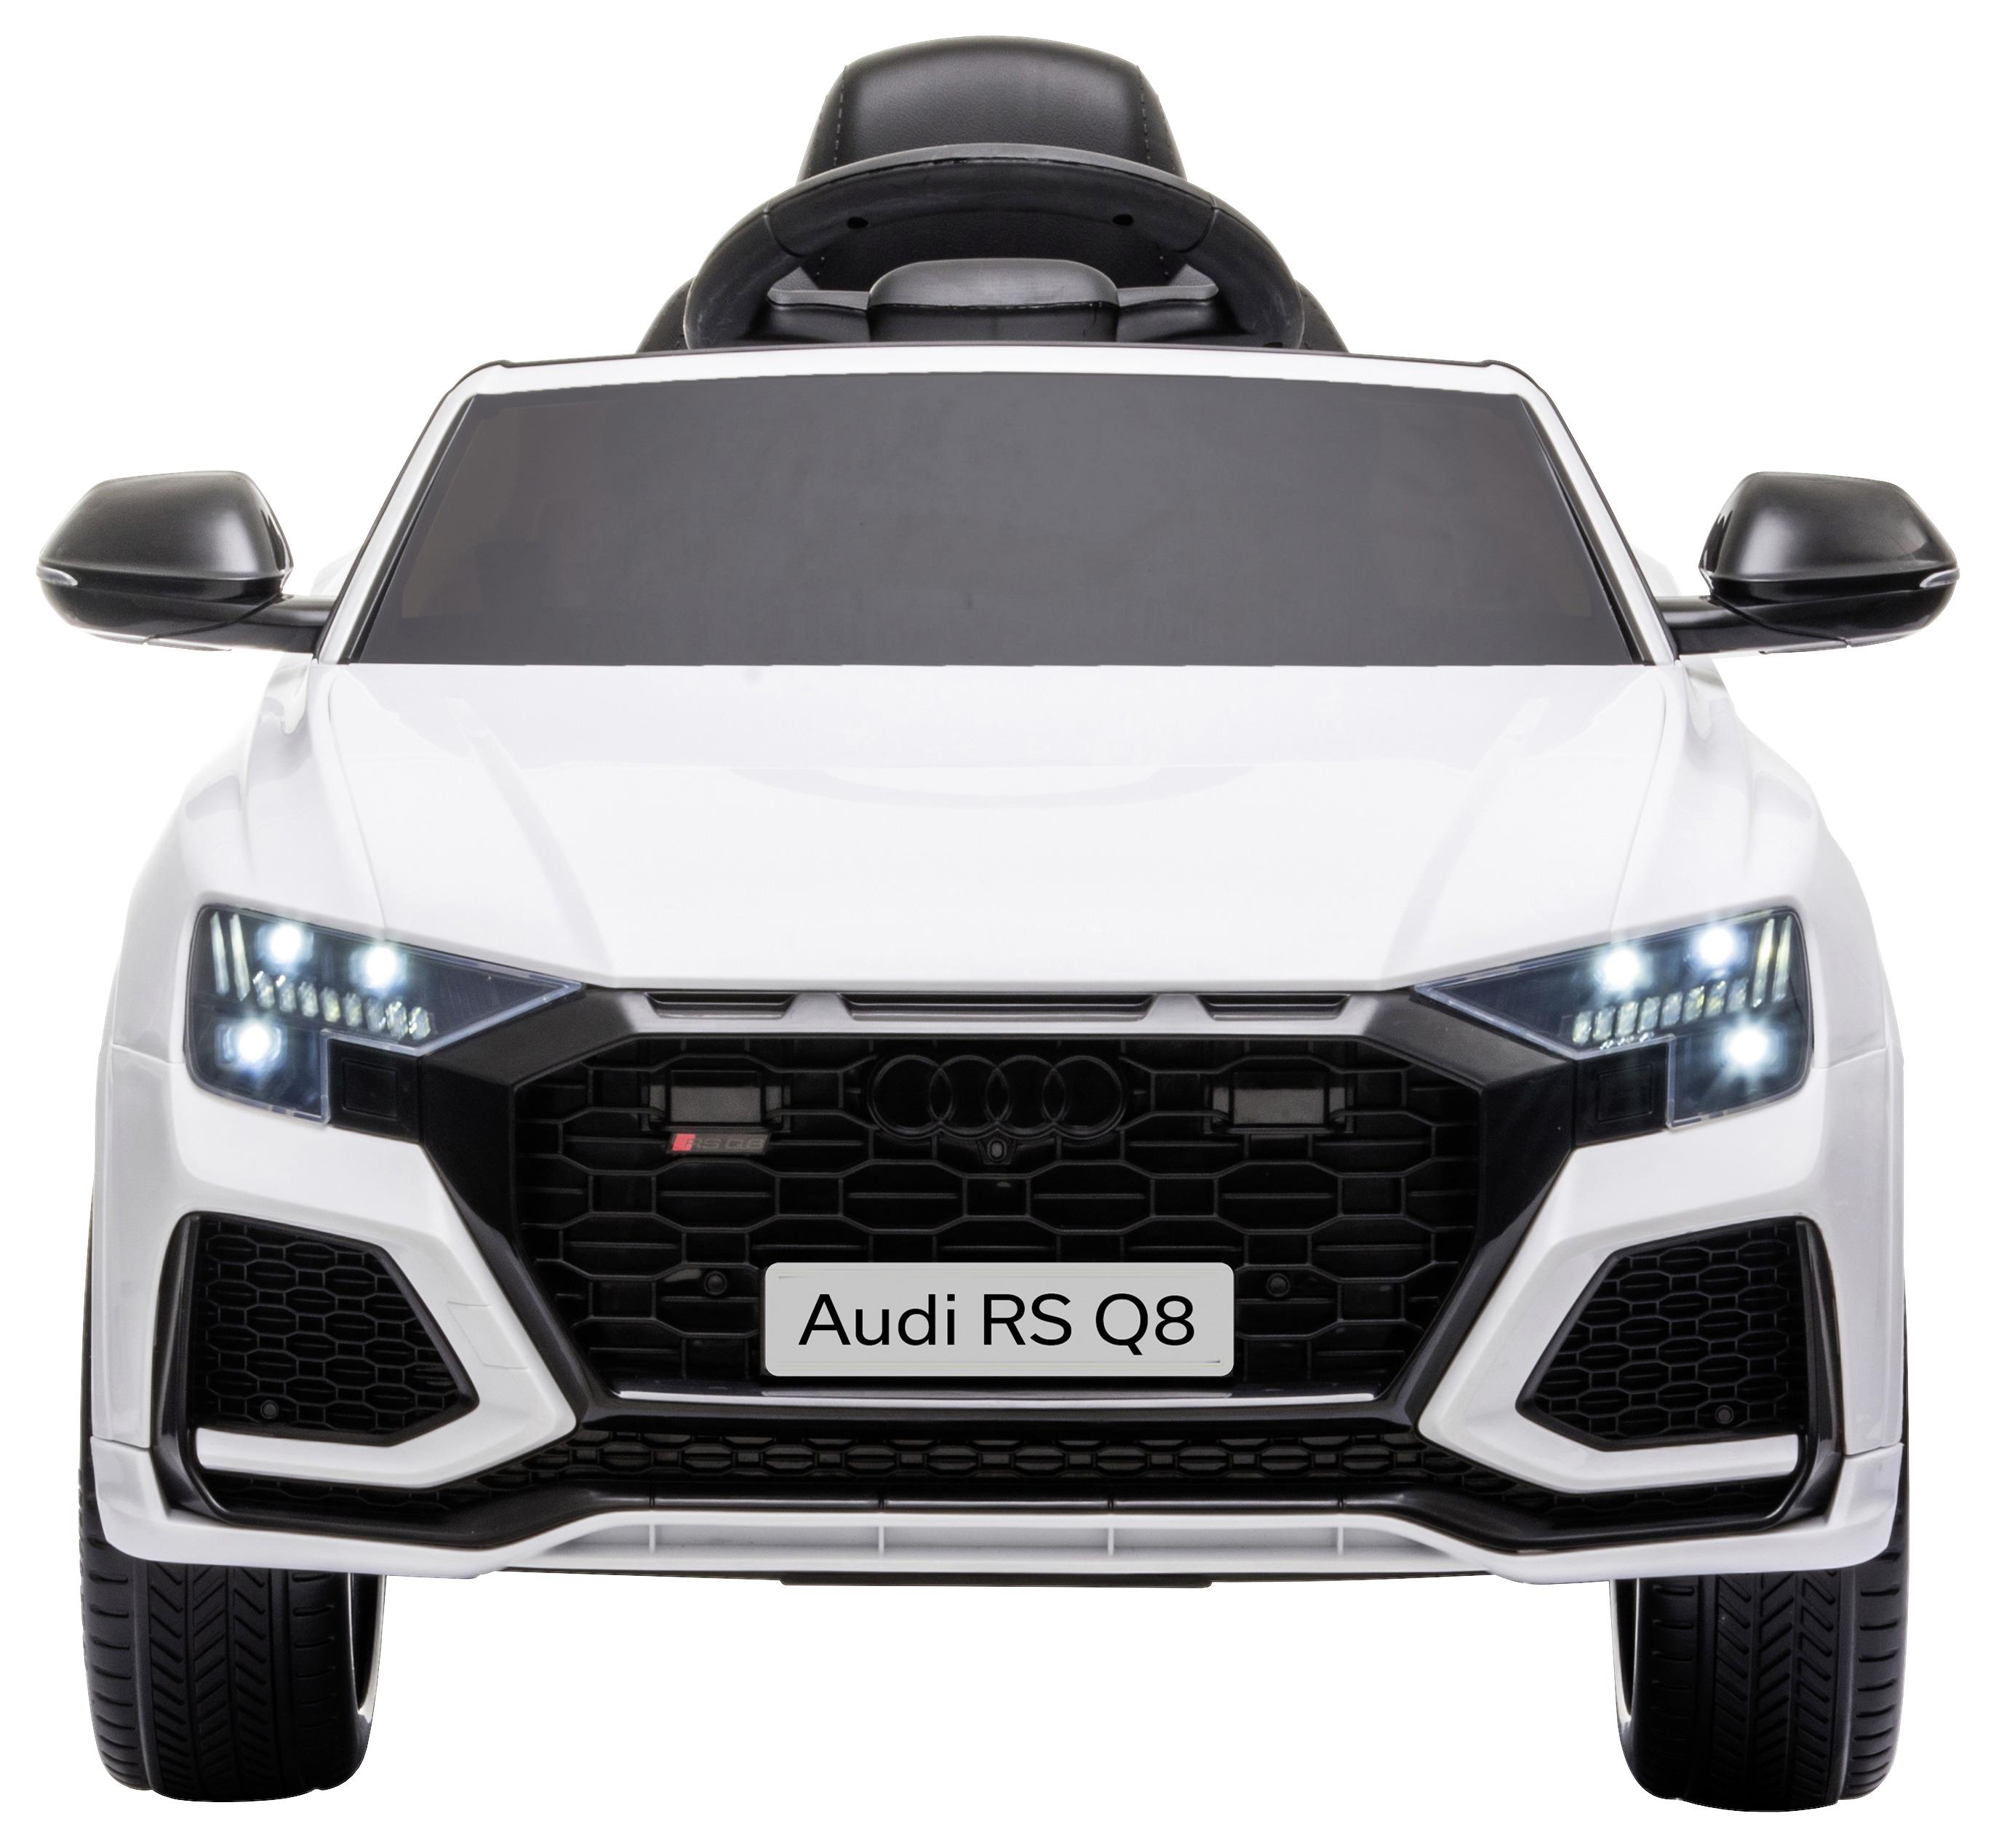 Kinder-Elektroauto Audi Rs Q8 Weiß mit Licht/Sound - Weiß, Basics, Kunststoff (101/62/51cm)